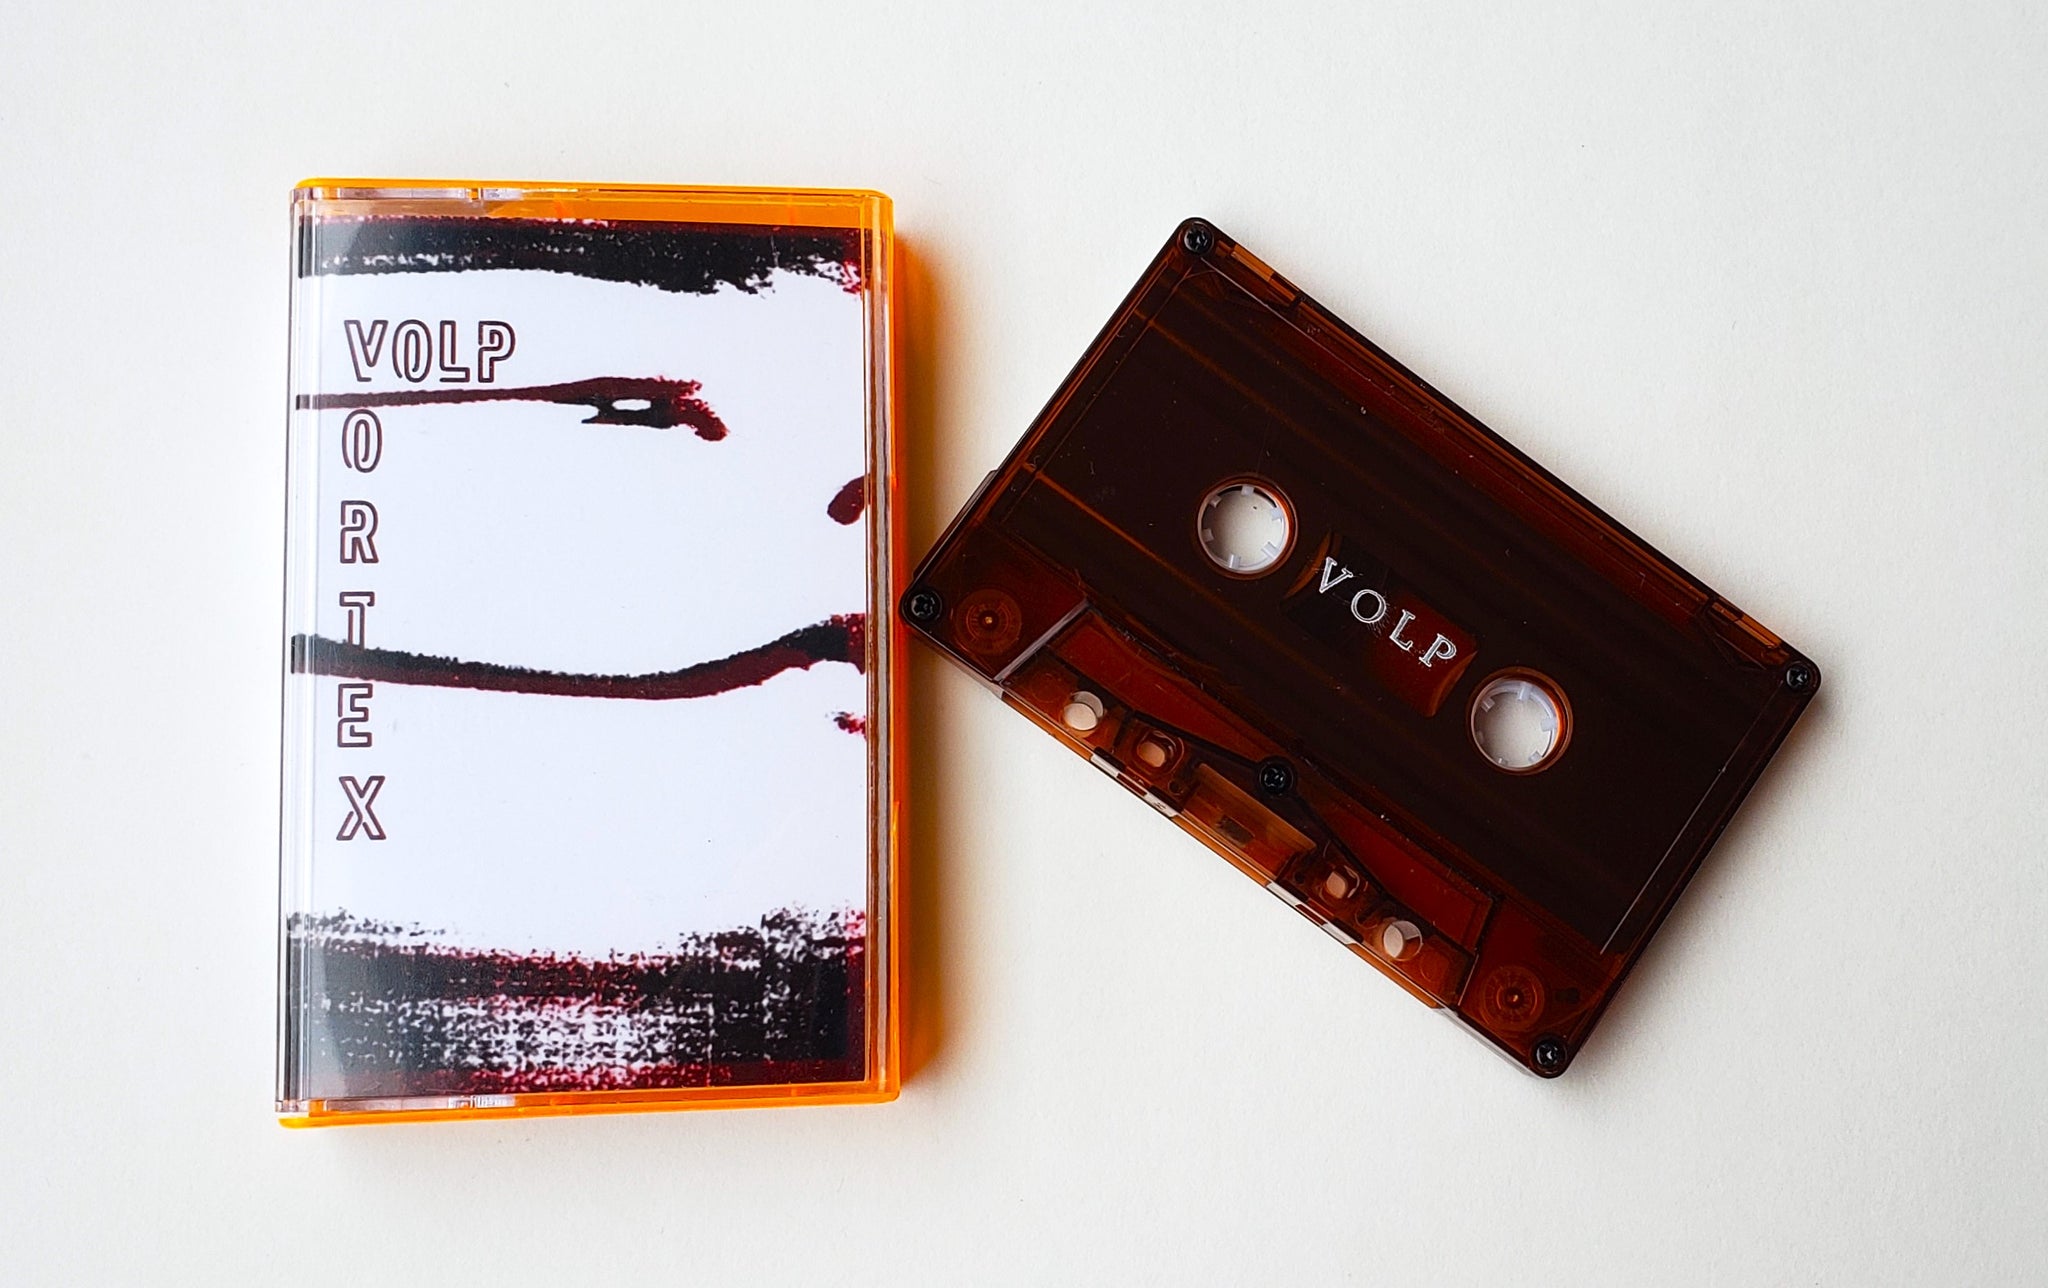 VOLP - Vortex (cassette)